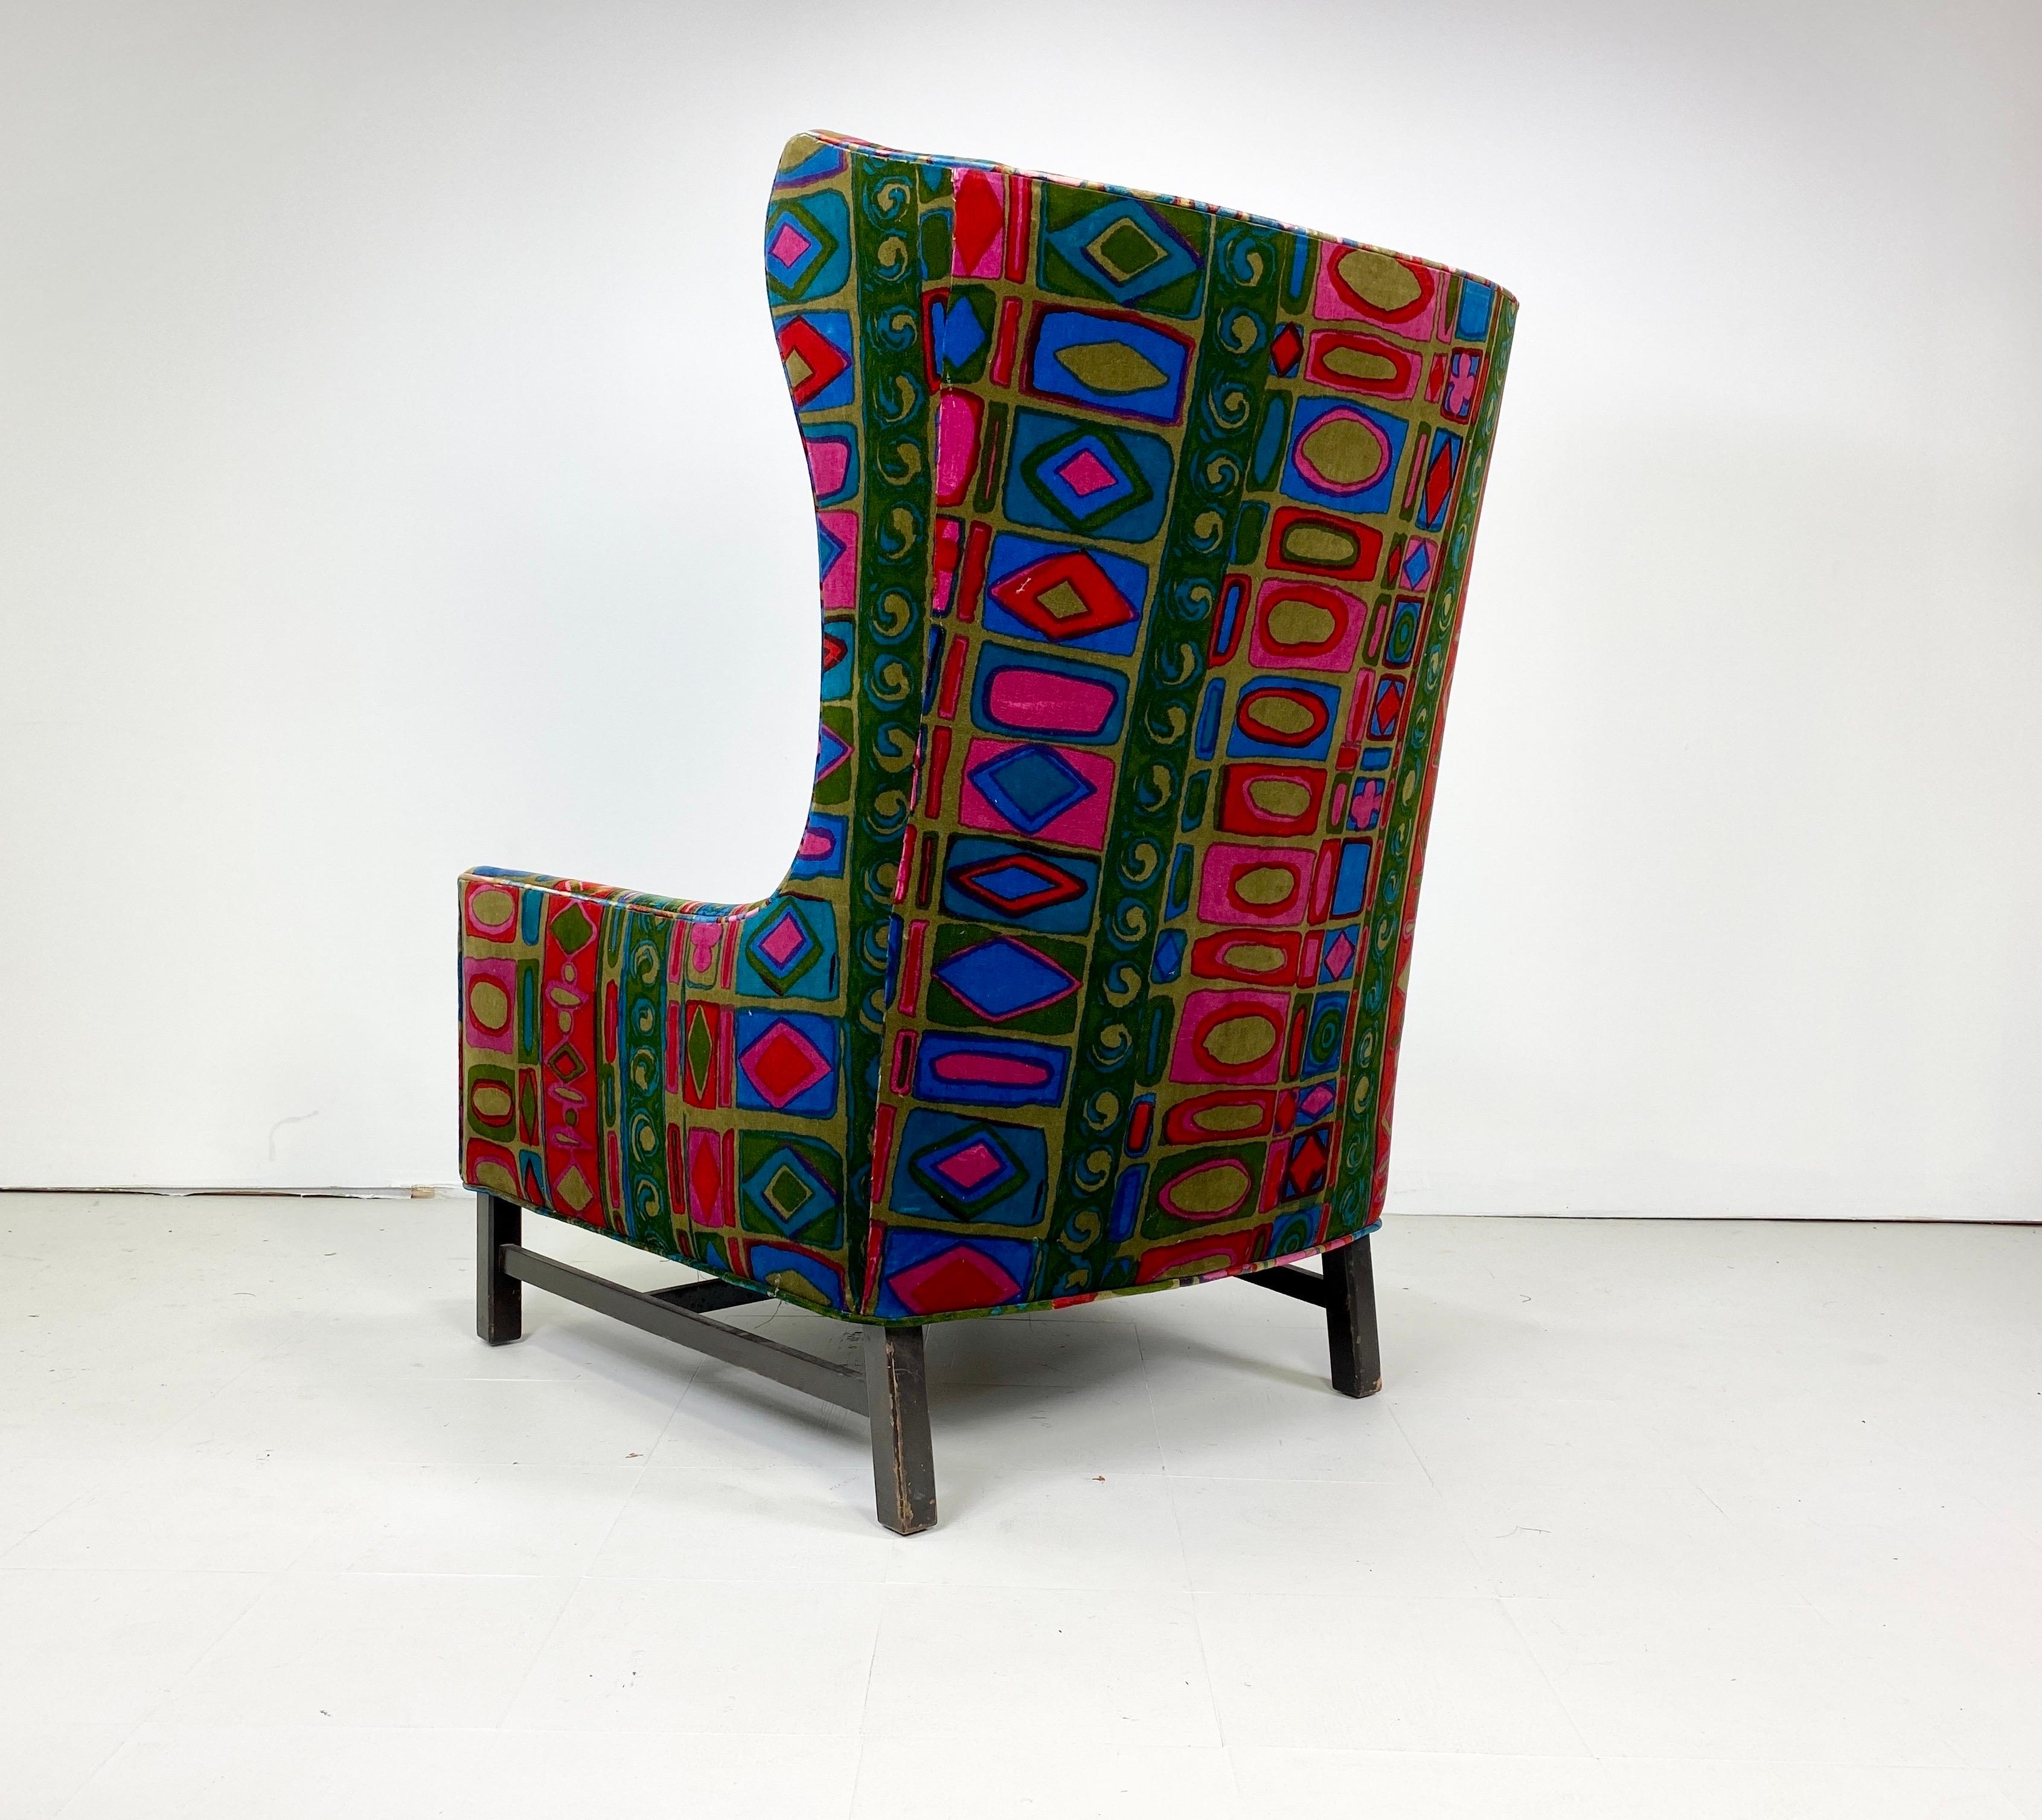 Chaise longue à dossier en forme d'aile, datant des années 1960, recouverte d'une superbe tapisserie vintage de Jack Lenor Larsen. Base en noyer teinté.

Livraison dans la région de New York pour 425 $. Veuillez vous renseigner.